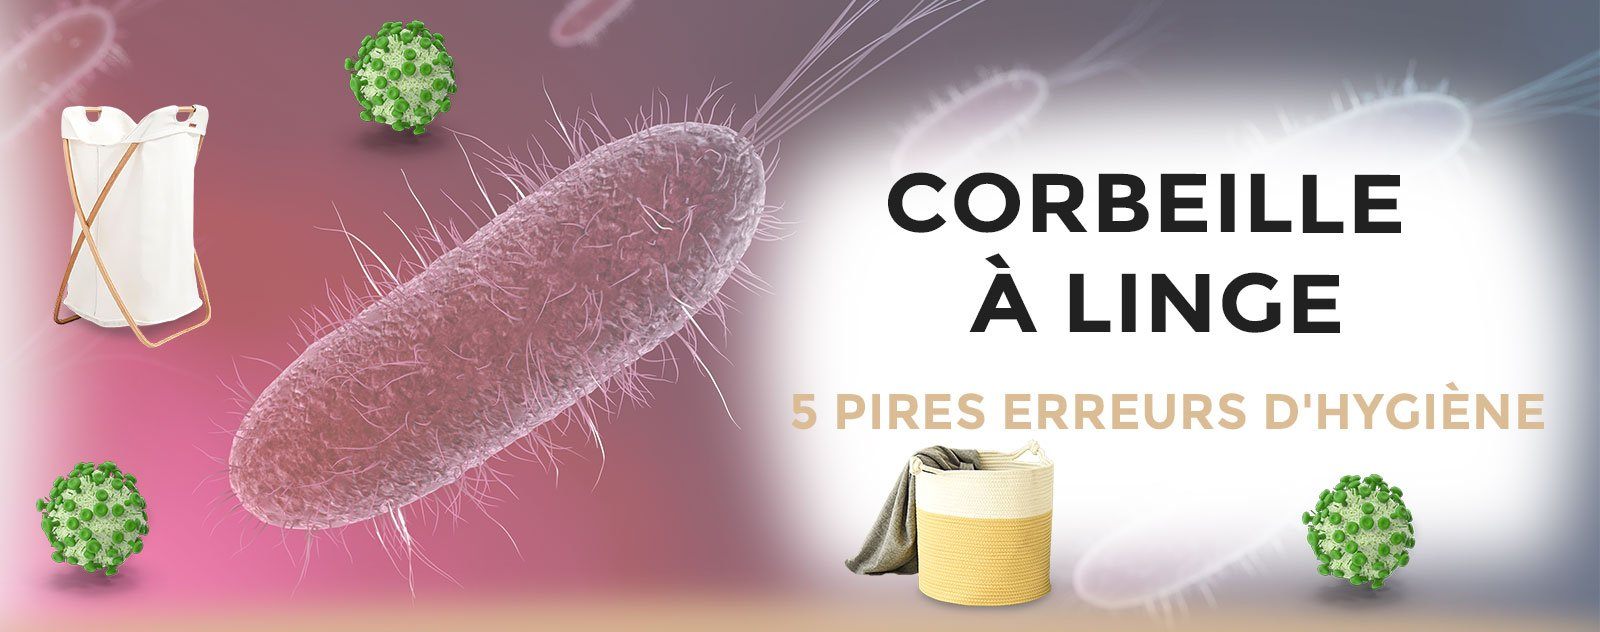 Corbeille à Linge : Les 5 Pires Erreurs qui en font un Nid à Microbes